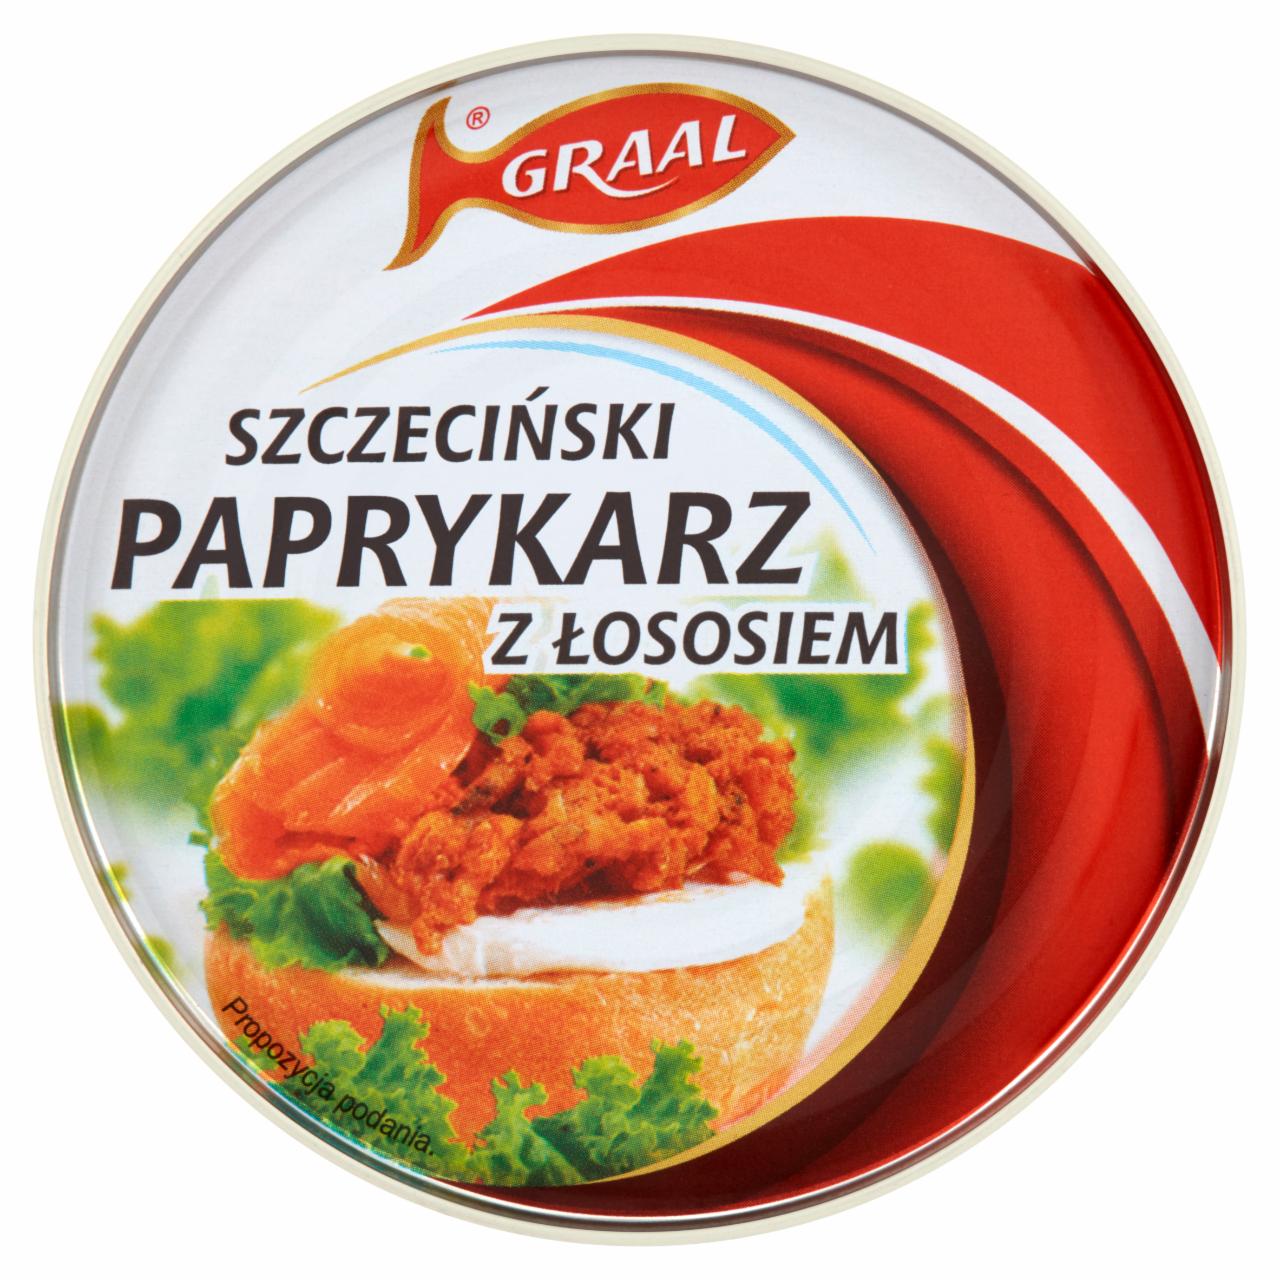 Zdjęcia - Szczeciński paprykarz z łososiem Graal